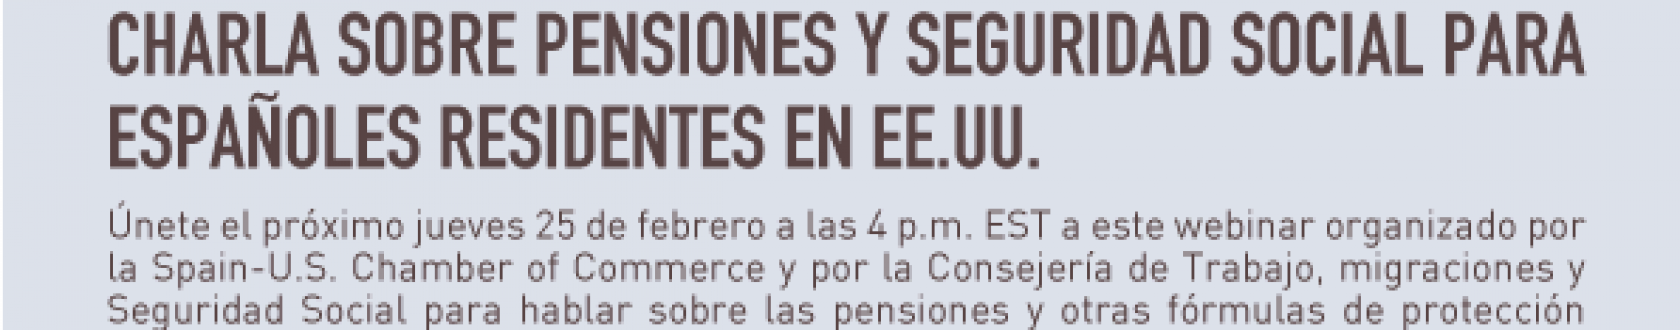 CHARLA-SOBRE-PENSIONES-Y-SEGURIDAD-SOCIAL-PARA-ESPAÑOLES-RESIDENTES-EN-EE.UU.